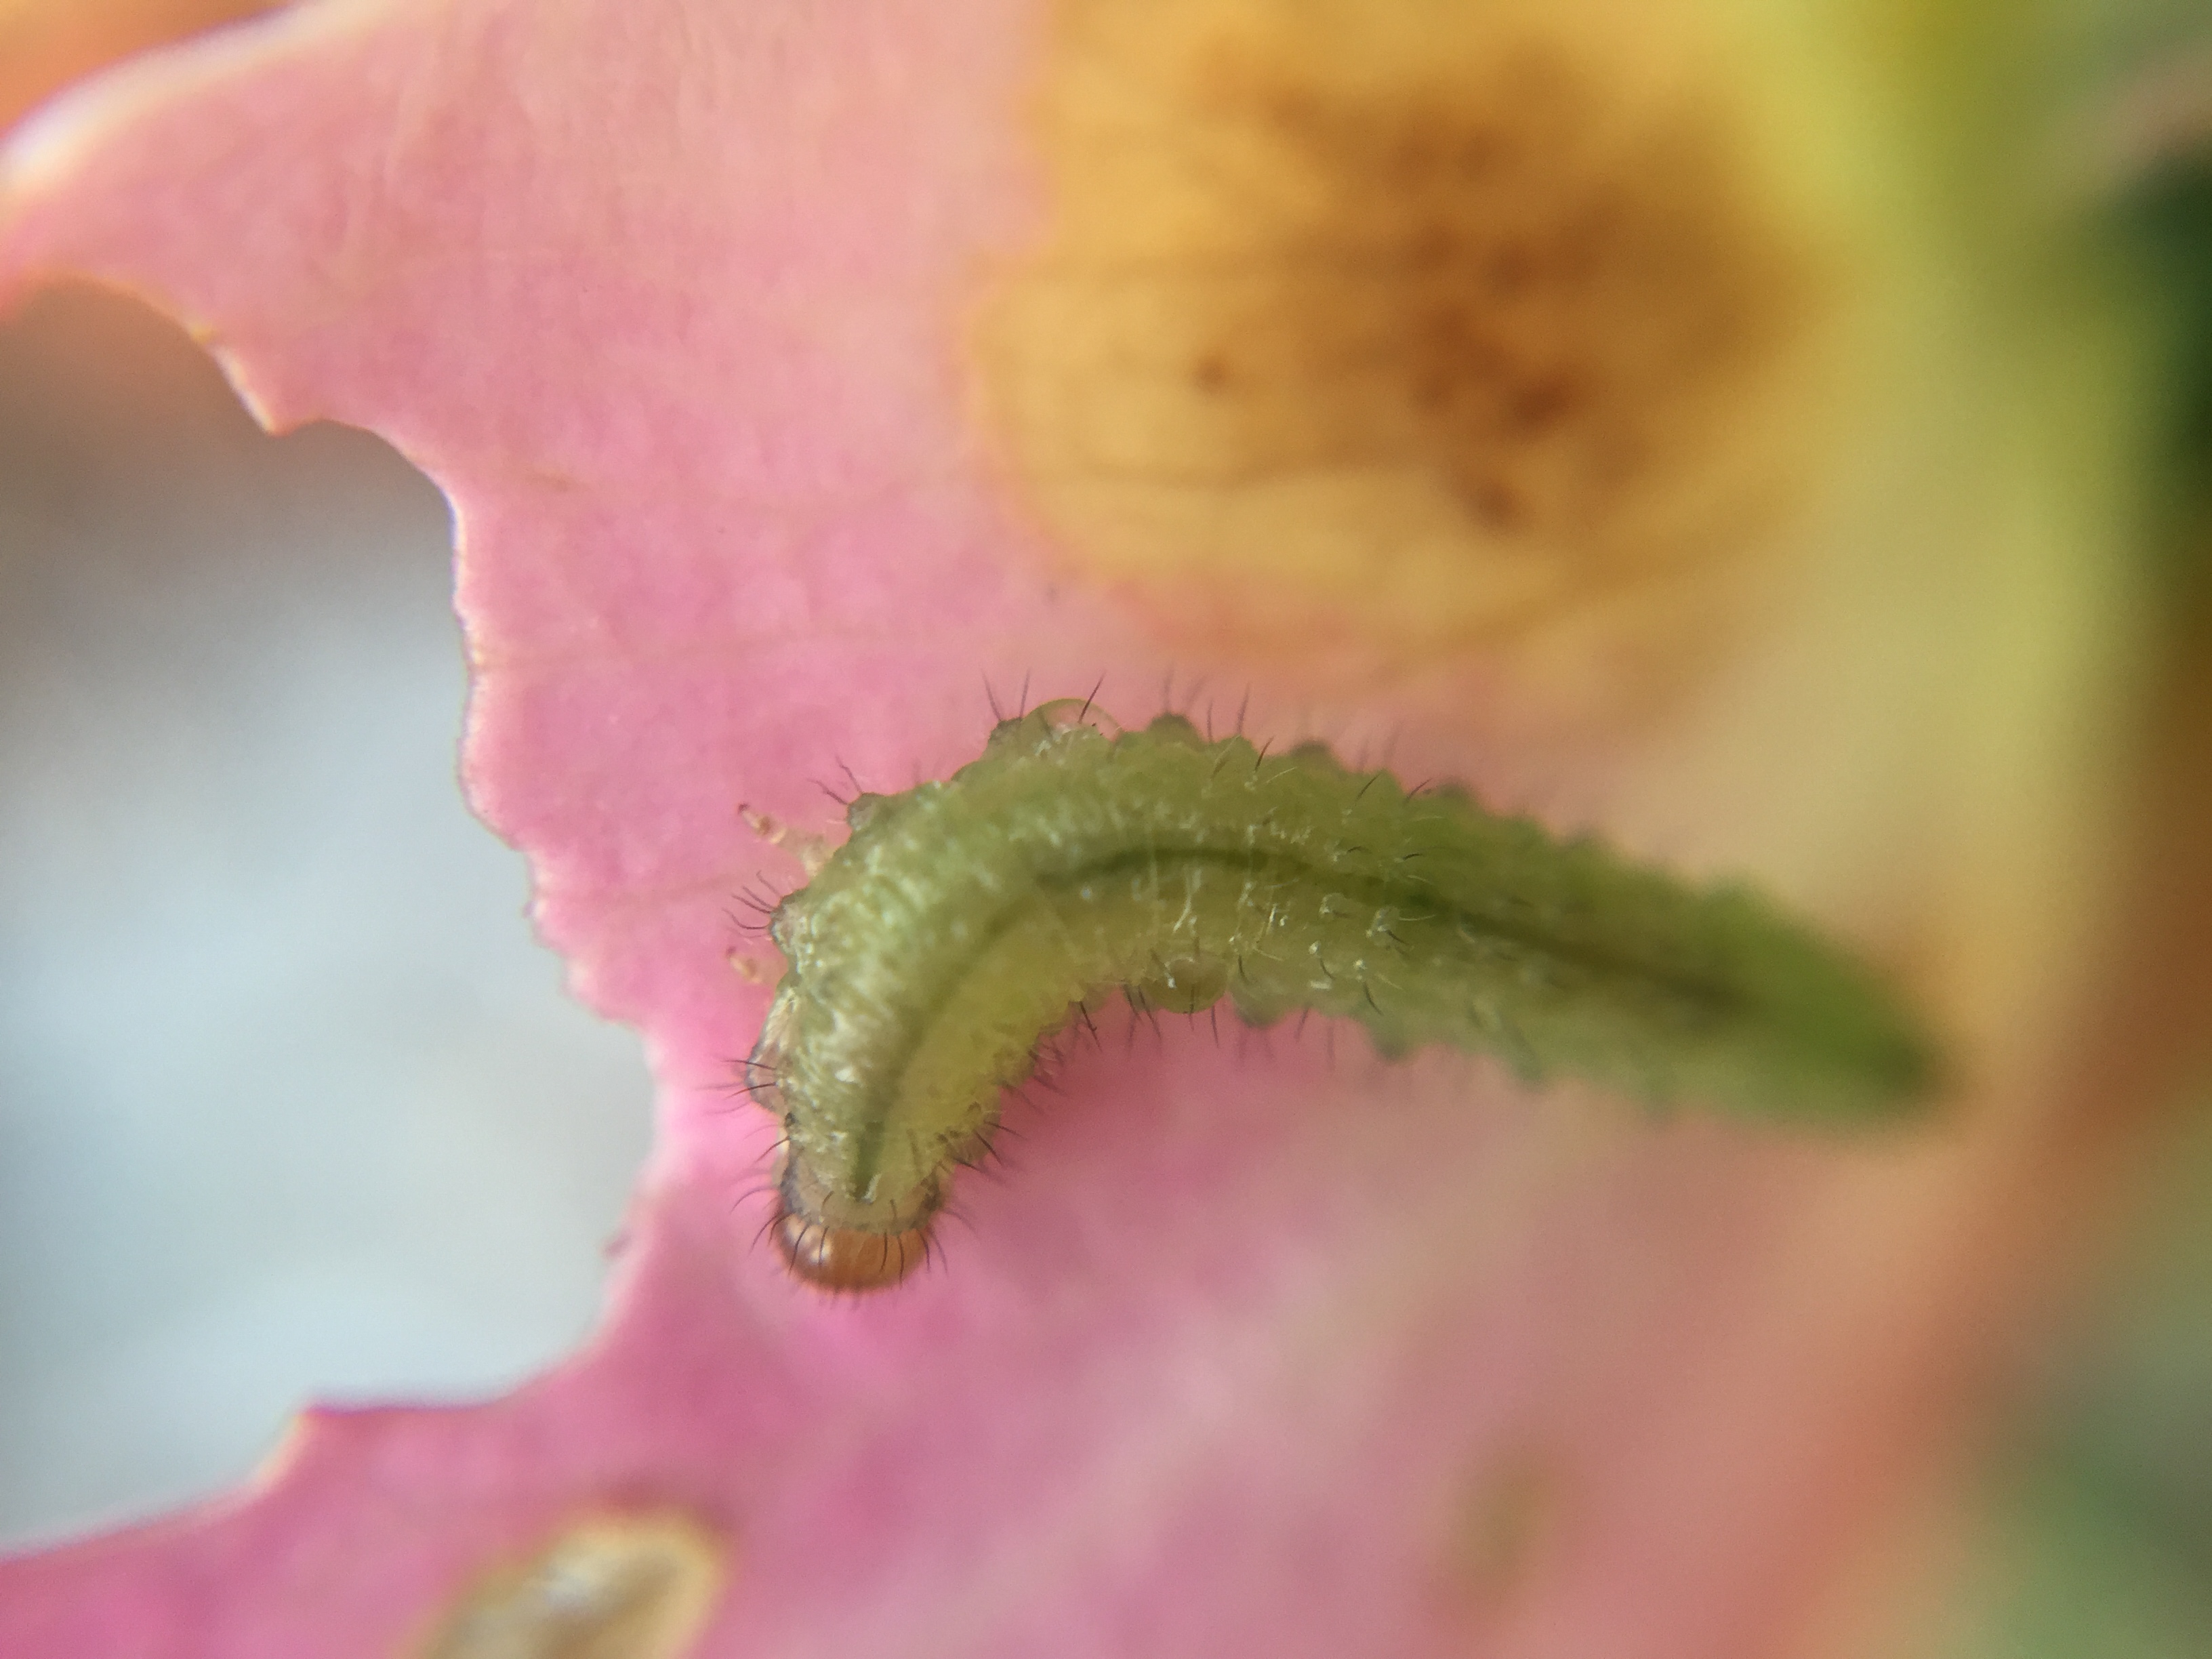 Caterpillar on a rose petal.